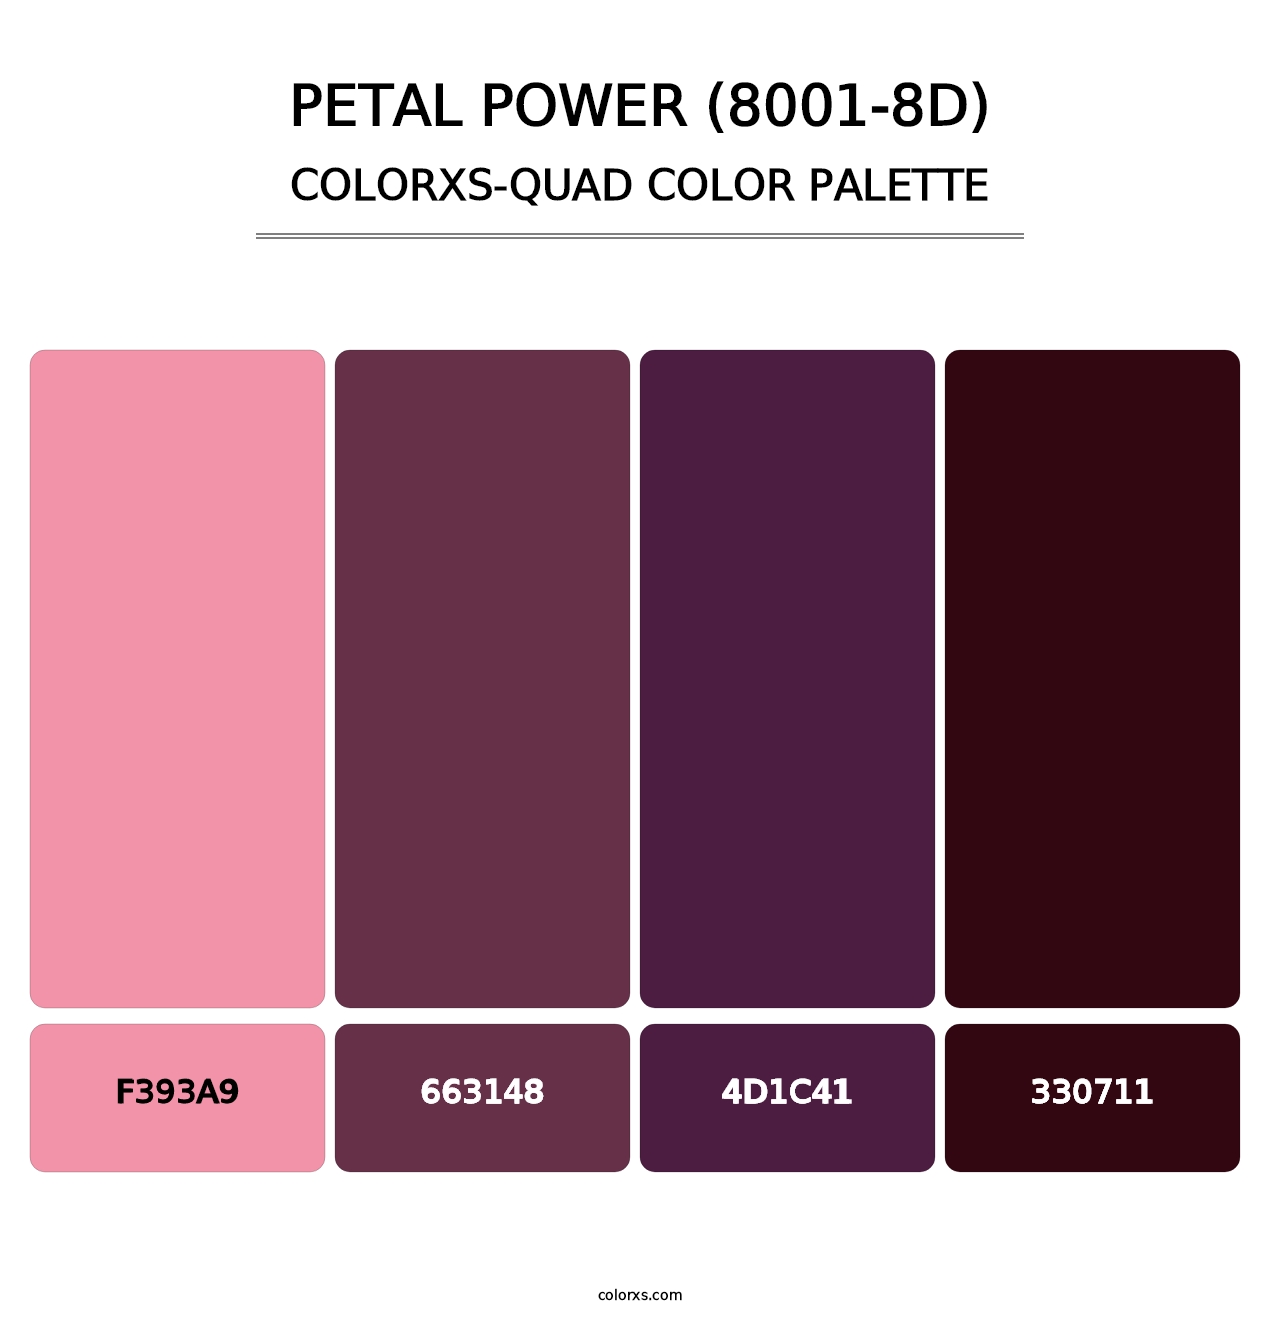 Petal Power (8001-8D) - Colorxs Quad Palette